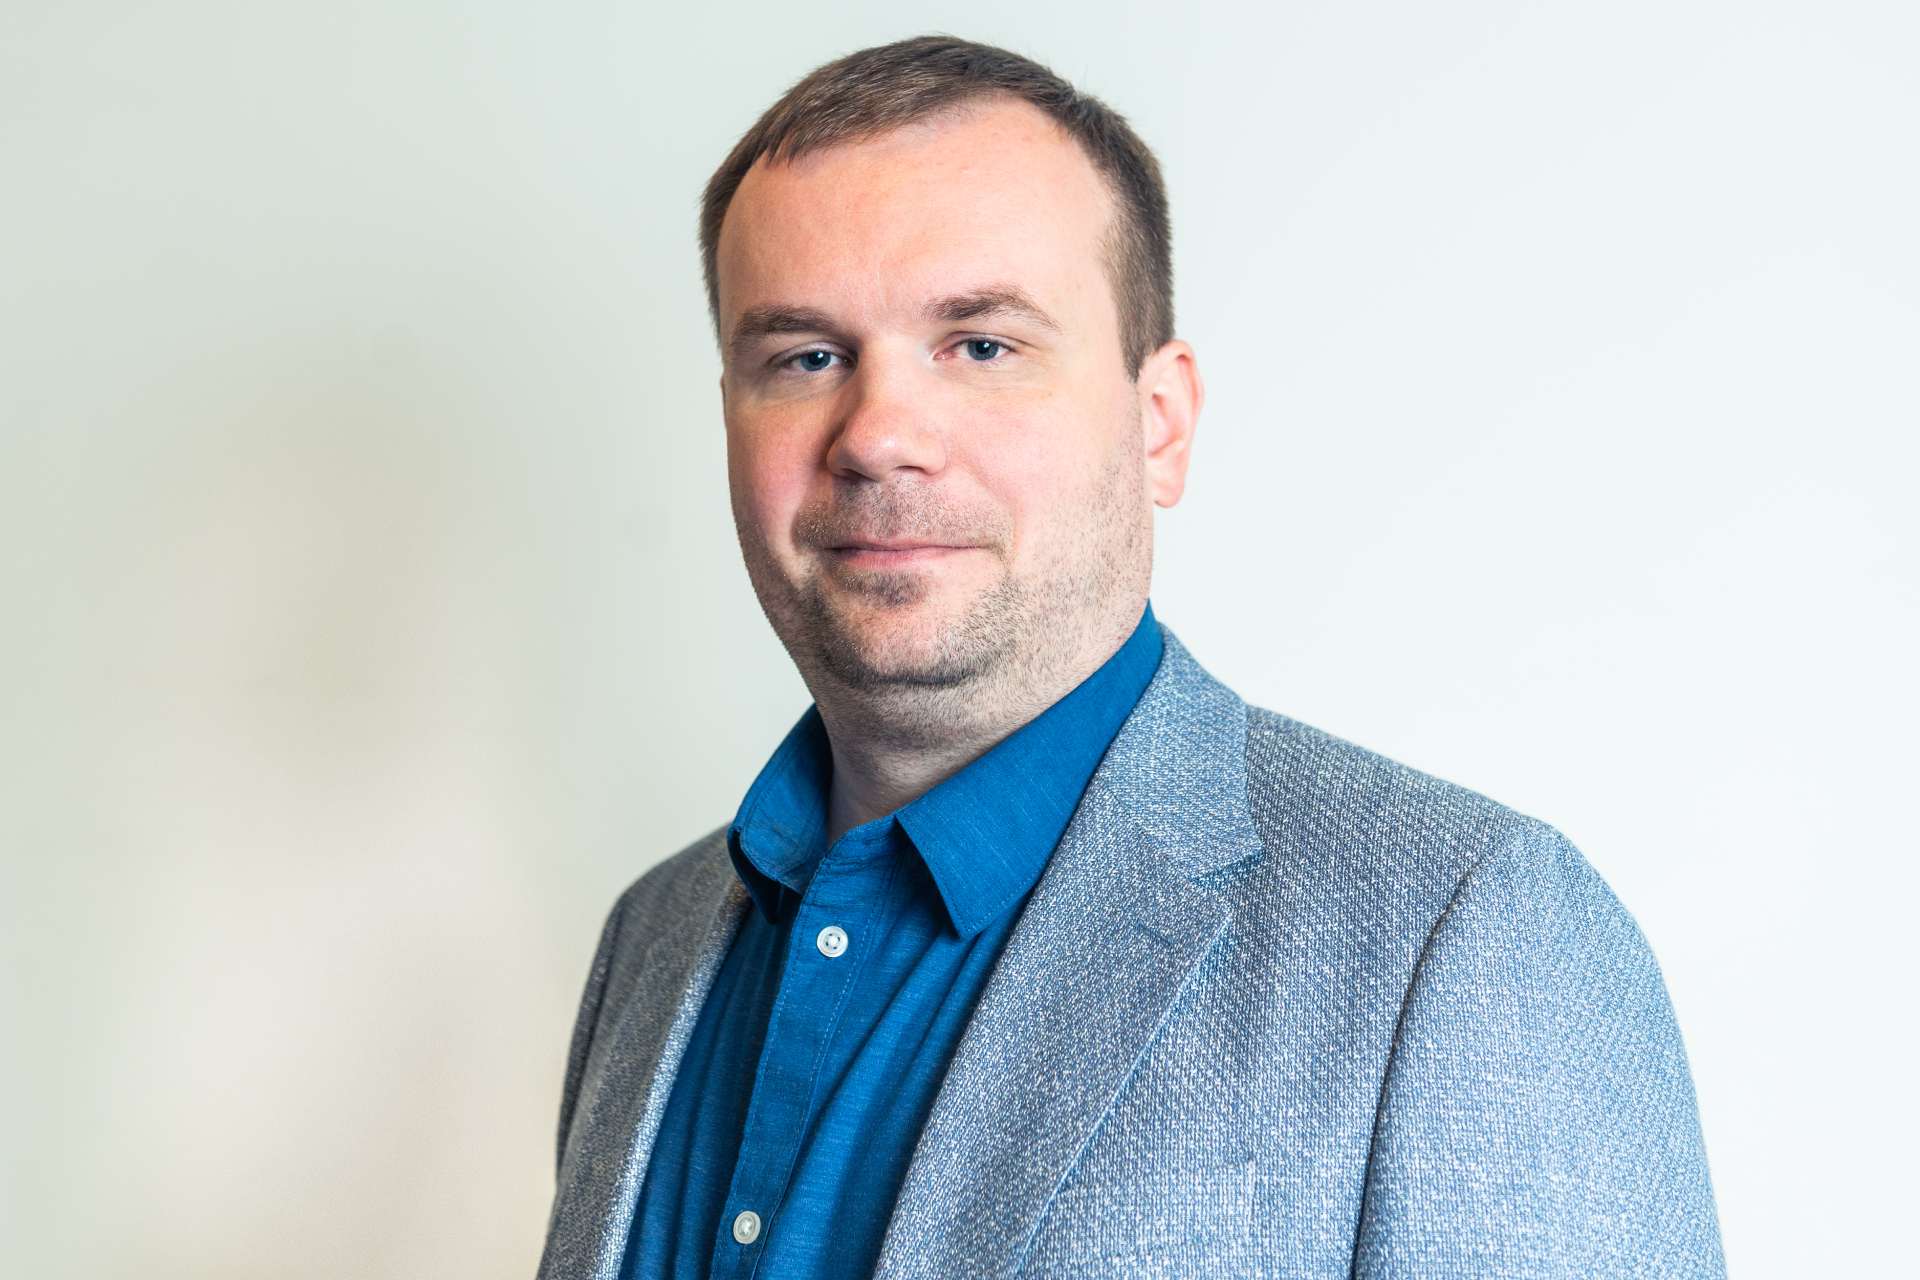 Алексей Боев - сооснователь и управляющий директор сервиса учета финансов ПланФакт. 